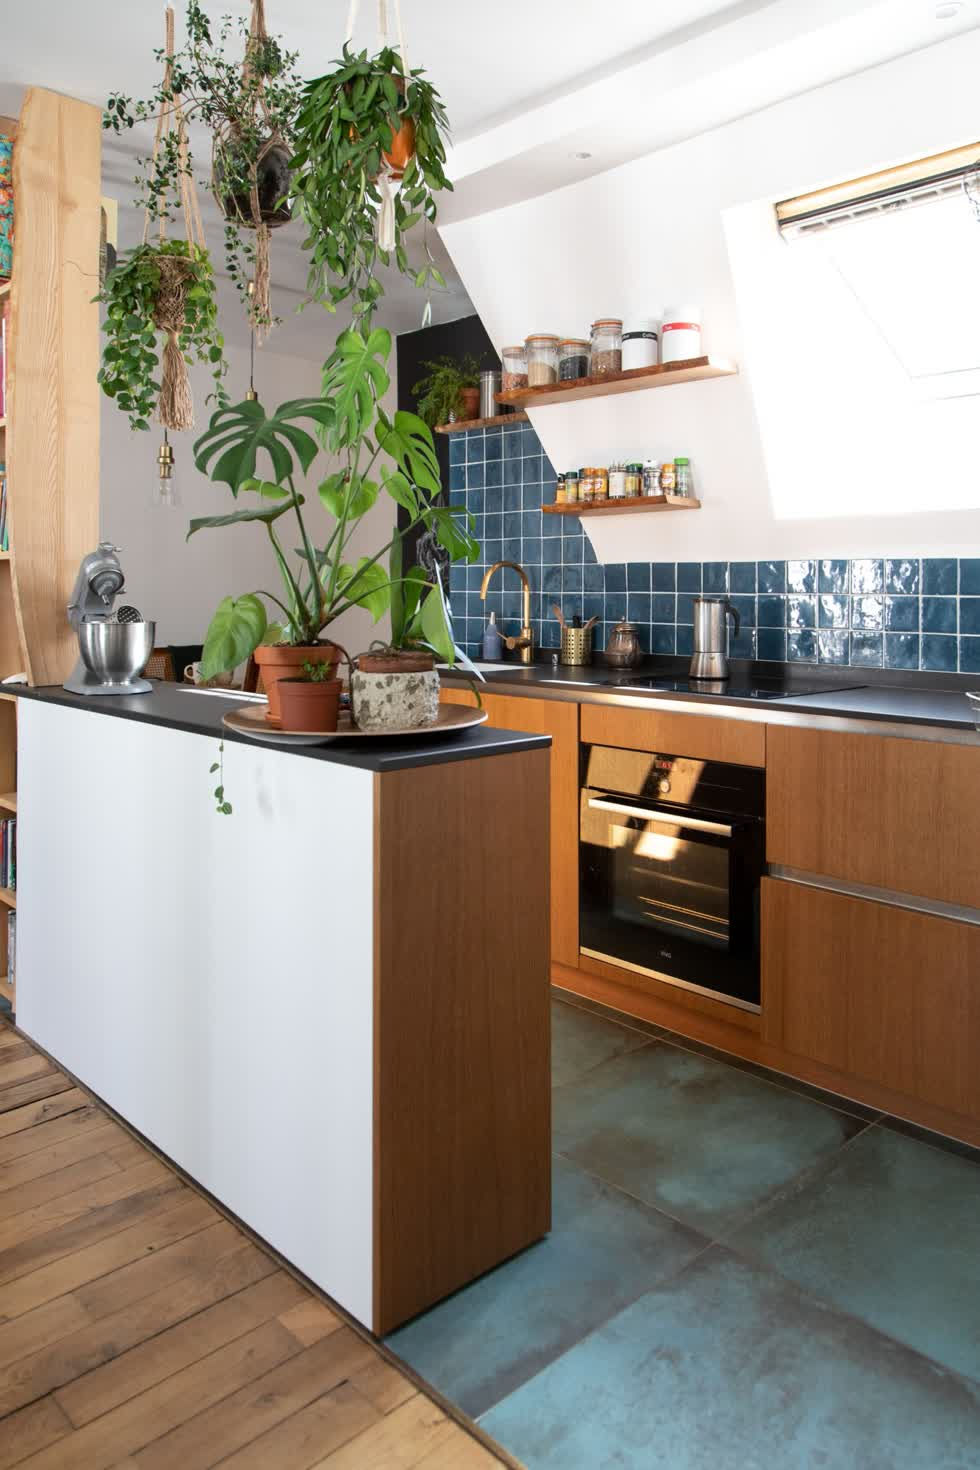   Nhà bếp chiết trung hình chữ U với gạch trắng và xanh và tủ gỗ.  